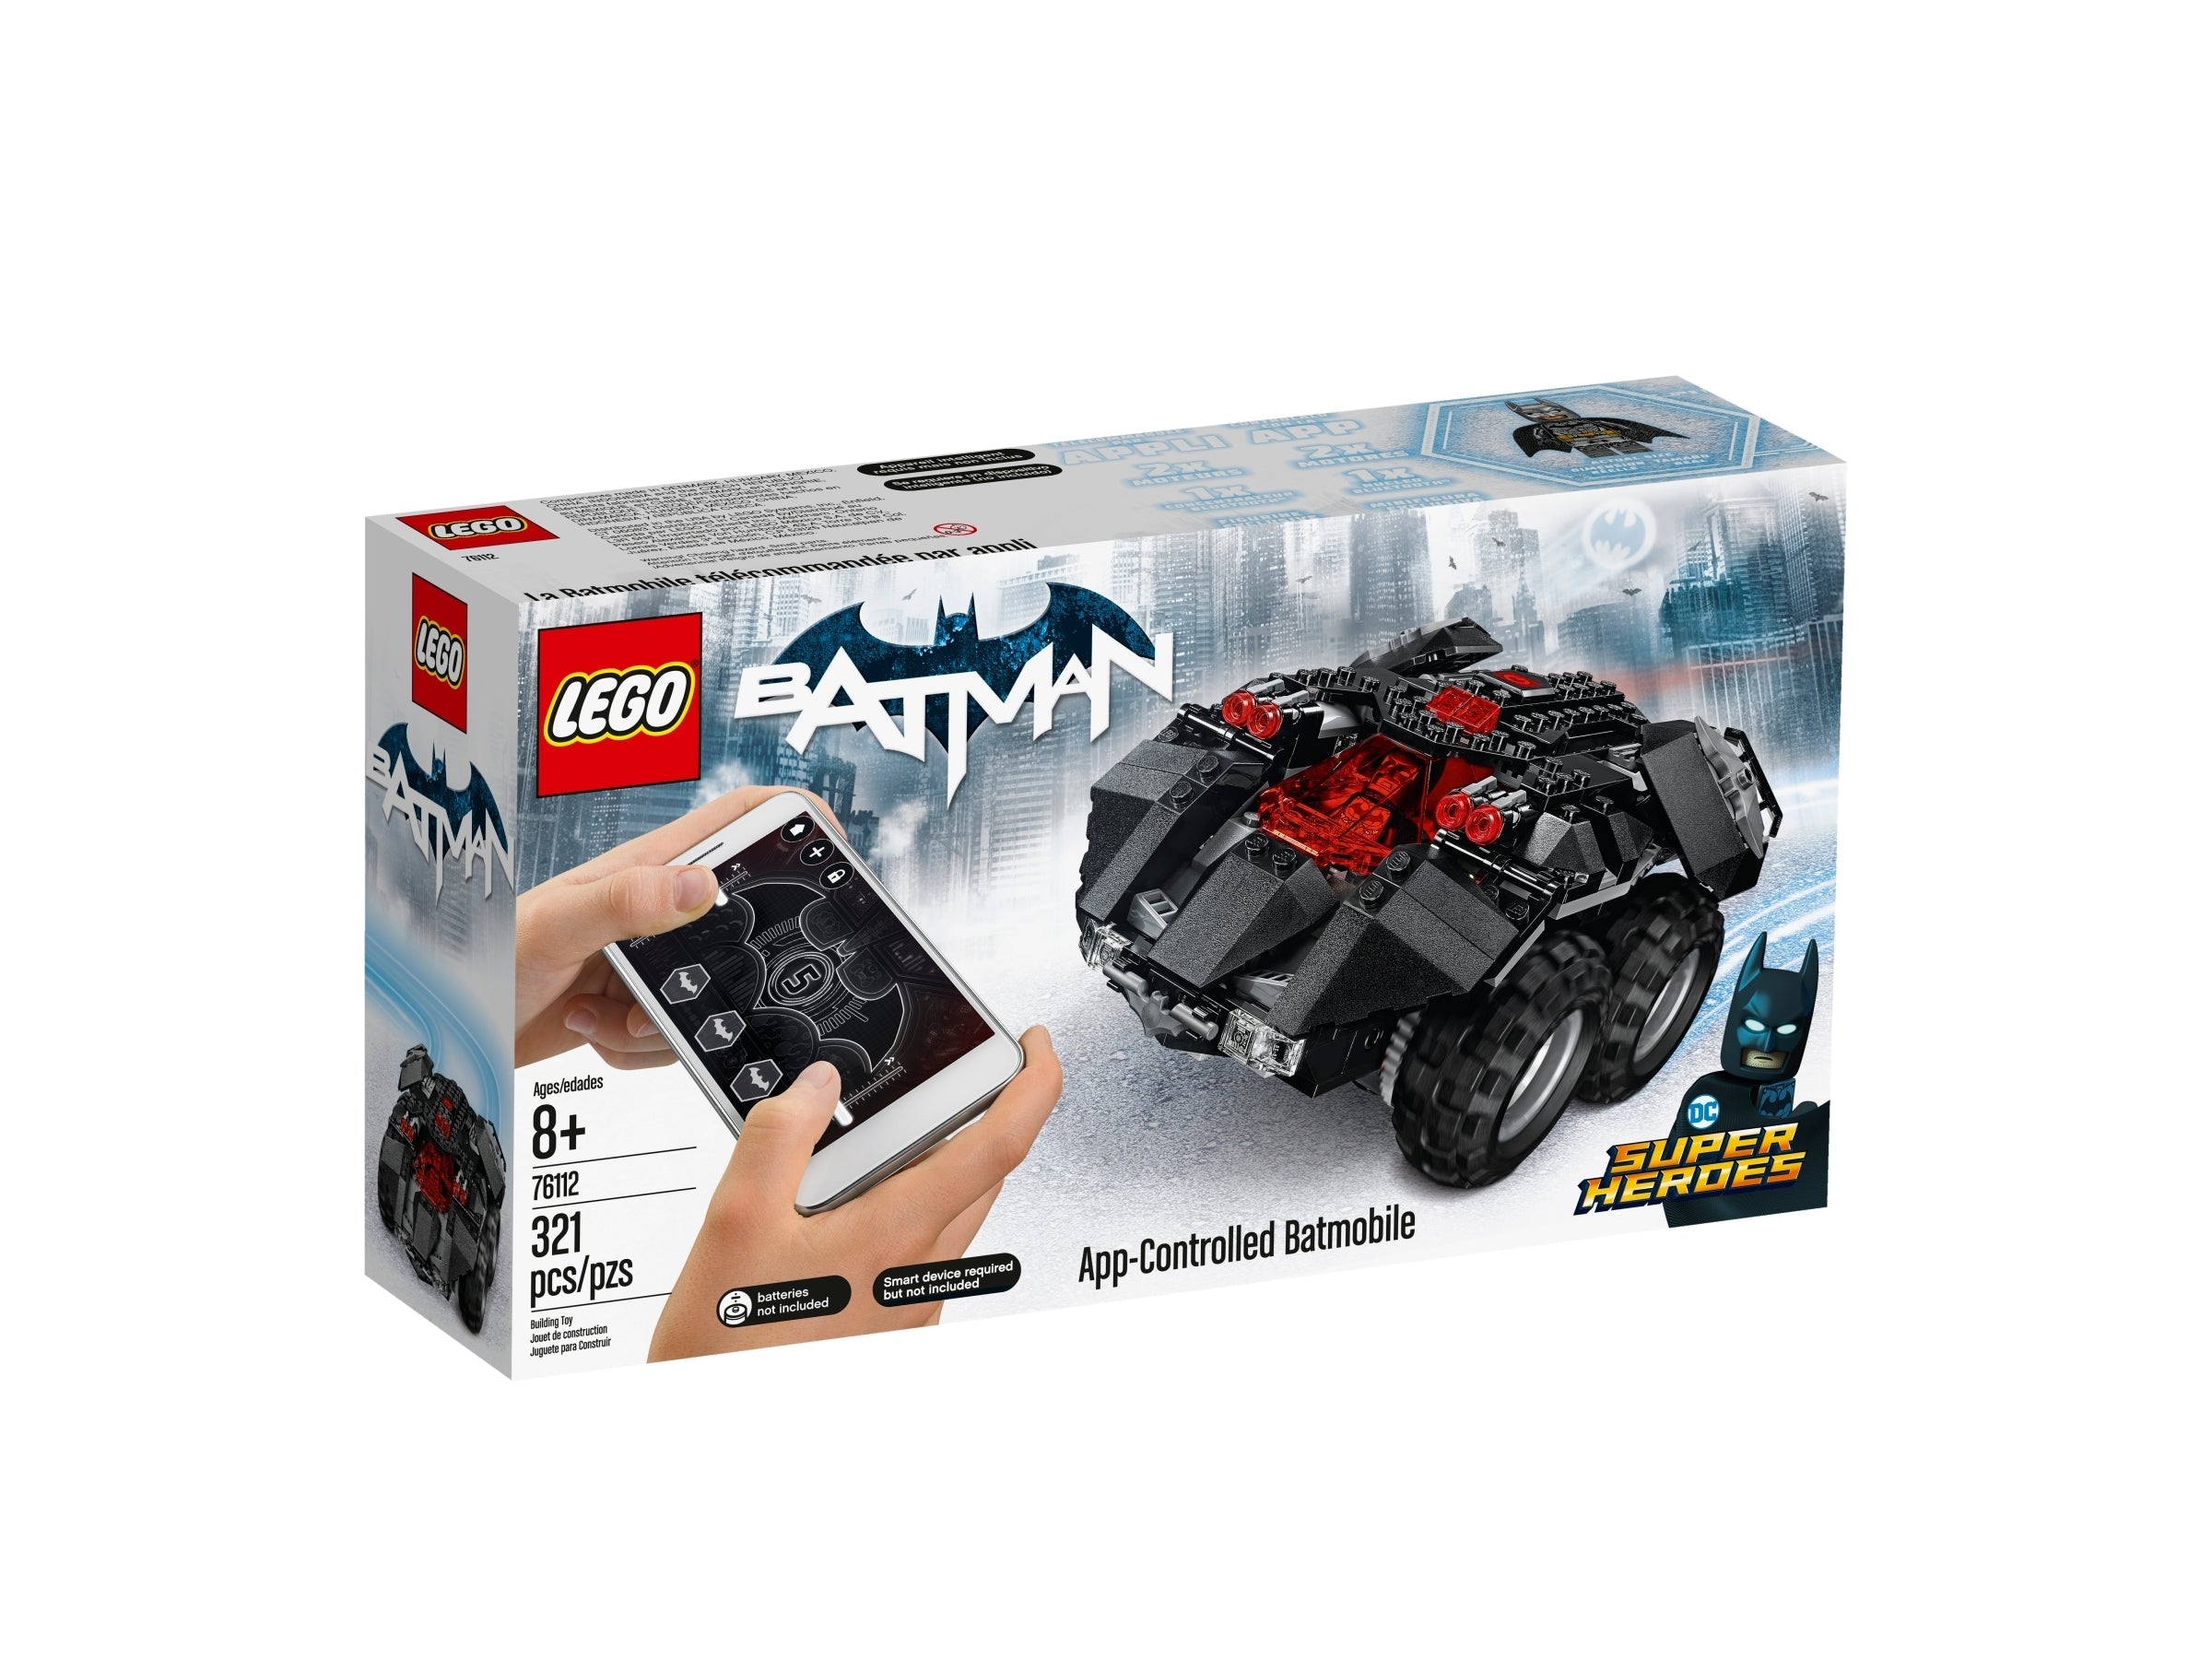 LEGO DC Super Heroes - Batman: App-Controlled Batmobile (76112) - im GOLDSTIEN.SHOP verfügbar mit Gratisversand ab Schweizer Lager! (5702016109016)